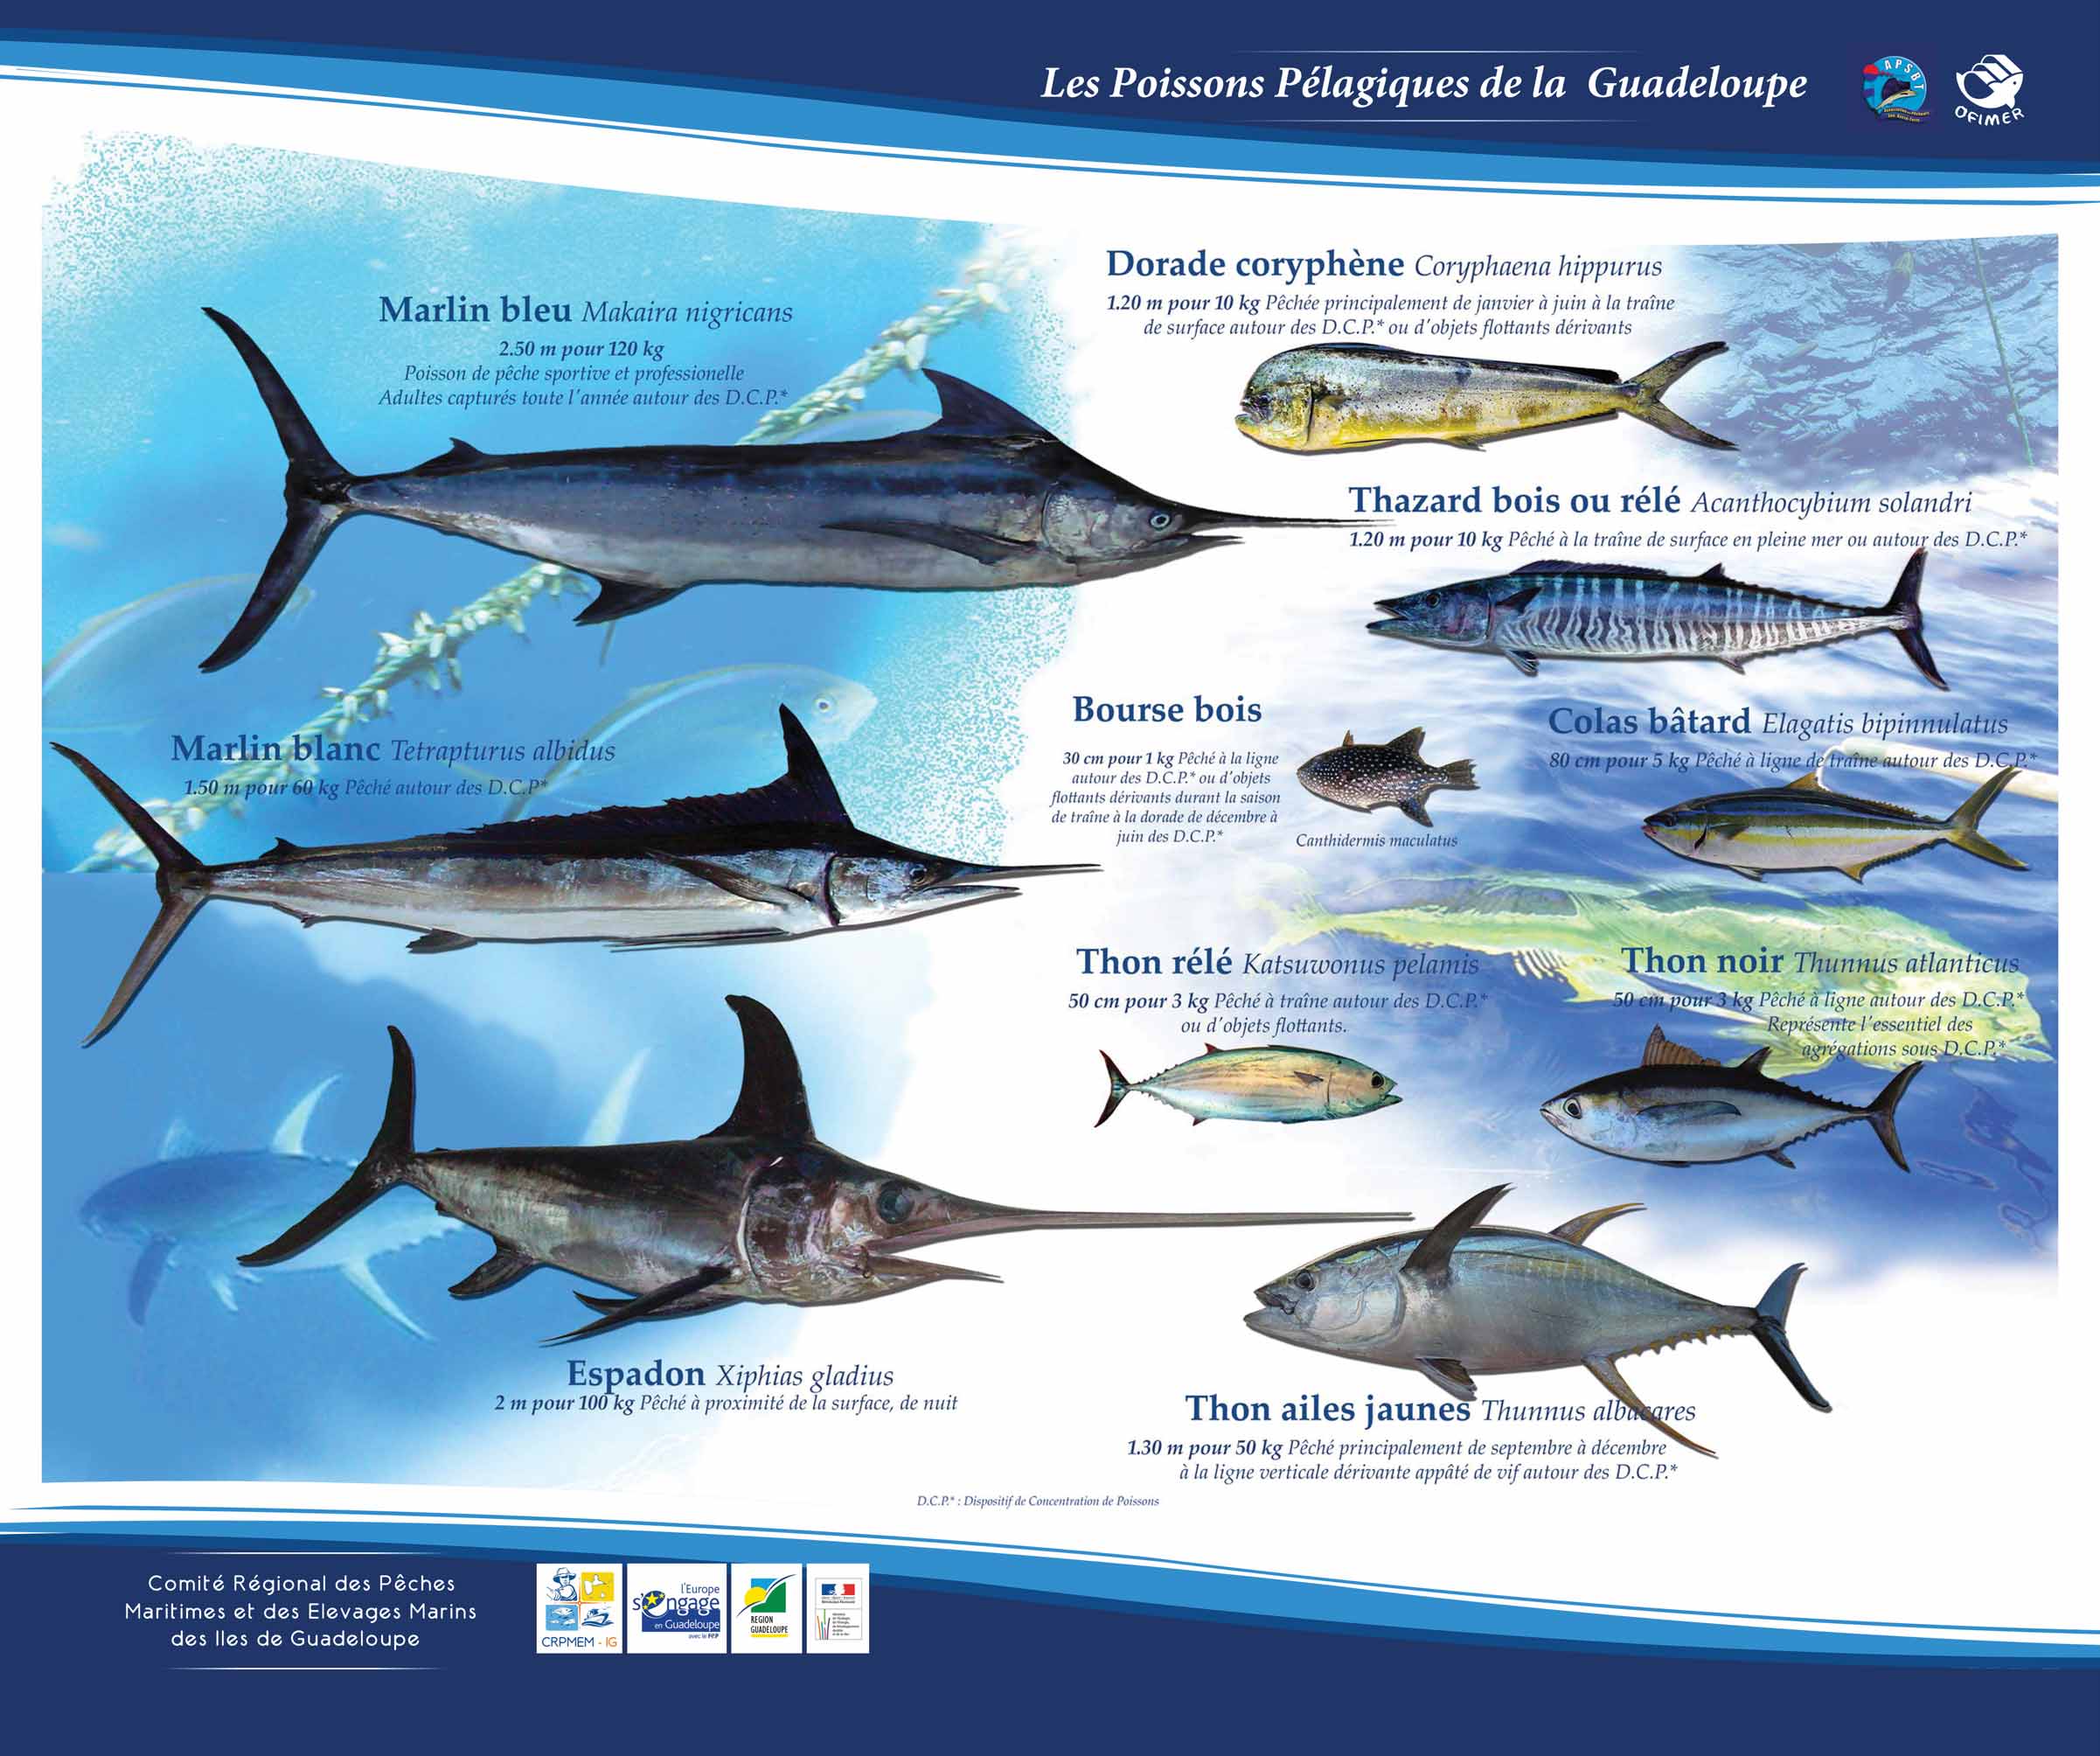 Télécharger le poster des poissons pélagiques principaux consommés en Guadeloupe